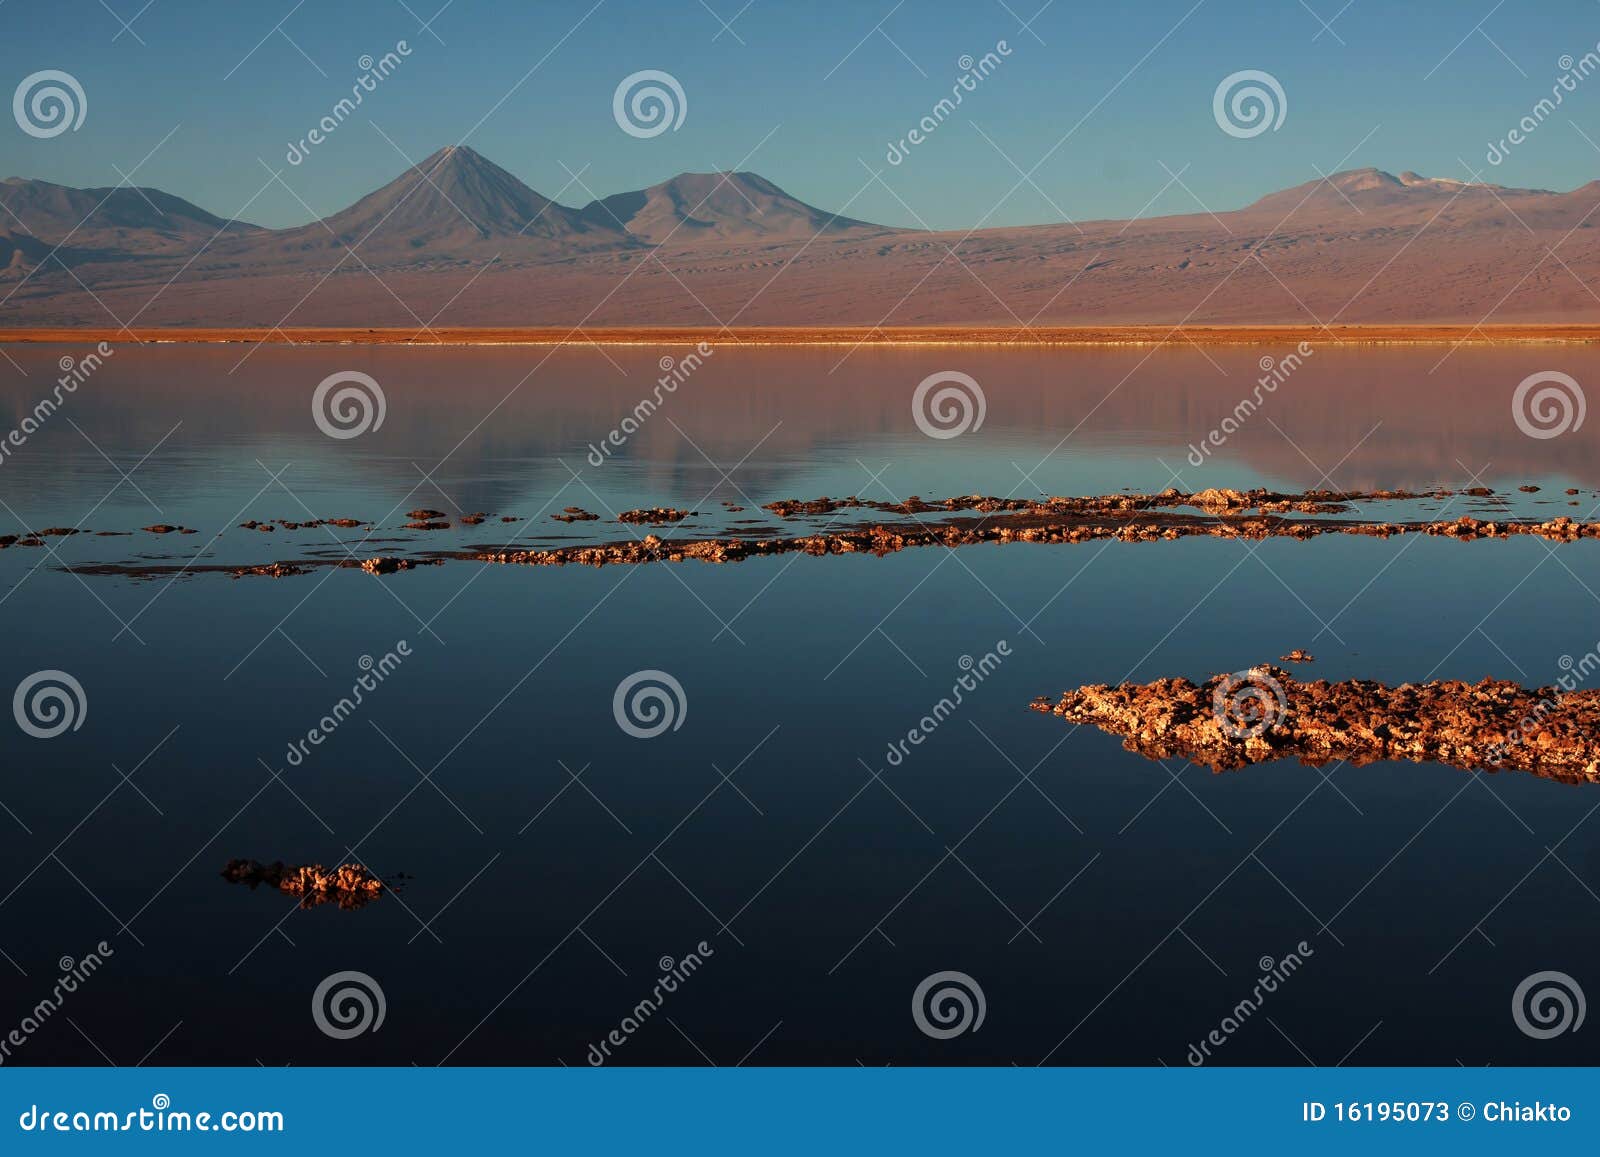 volcano licancabur in a chilean lagoon